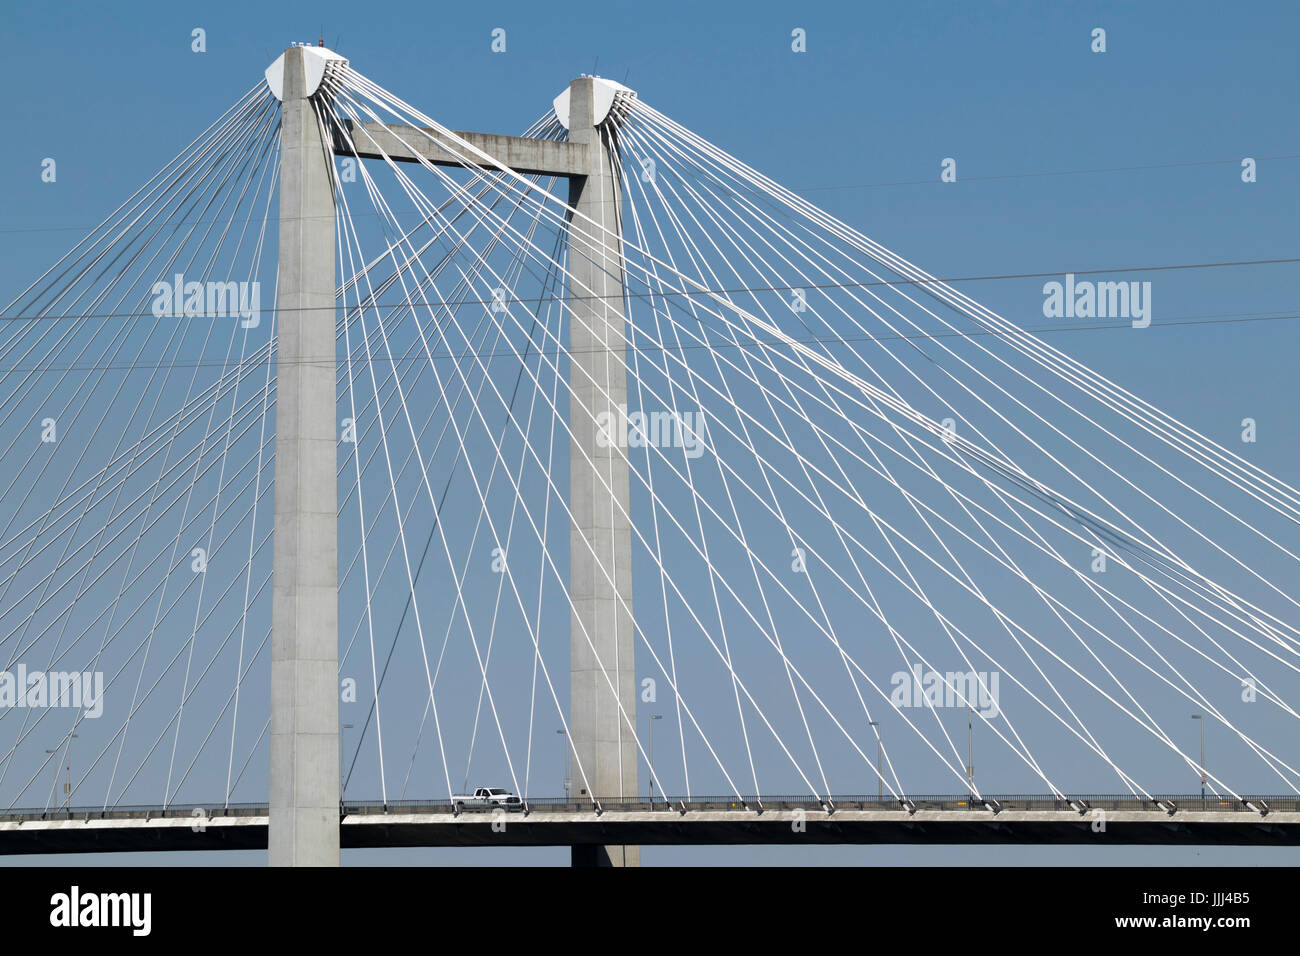 Le pont à câbles, officiellement appelé le pont Ed Hendler, enjambe la rivière Columbia entre Pasco et Kennewick, Tricities, USA Banque D'Images